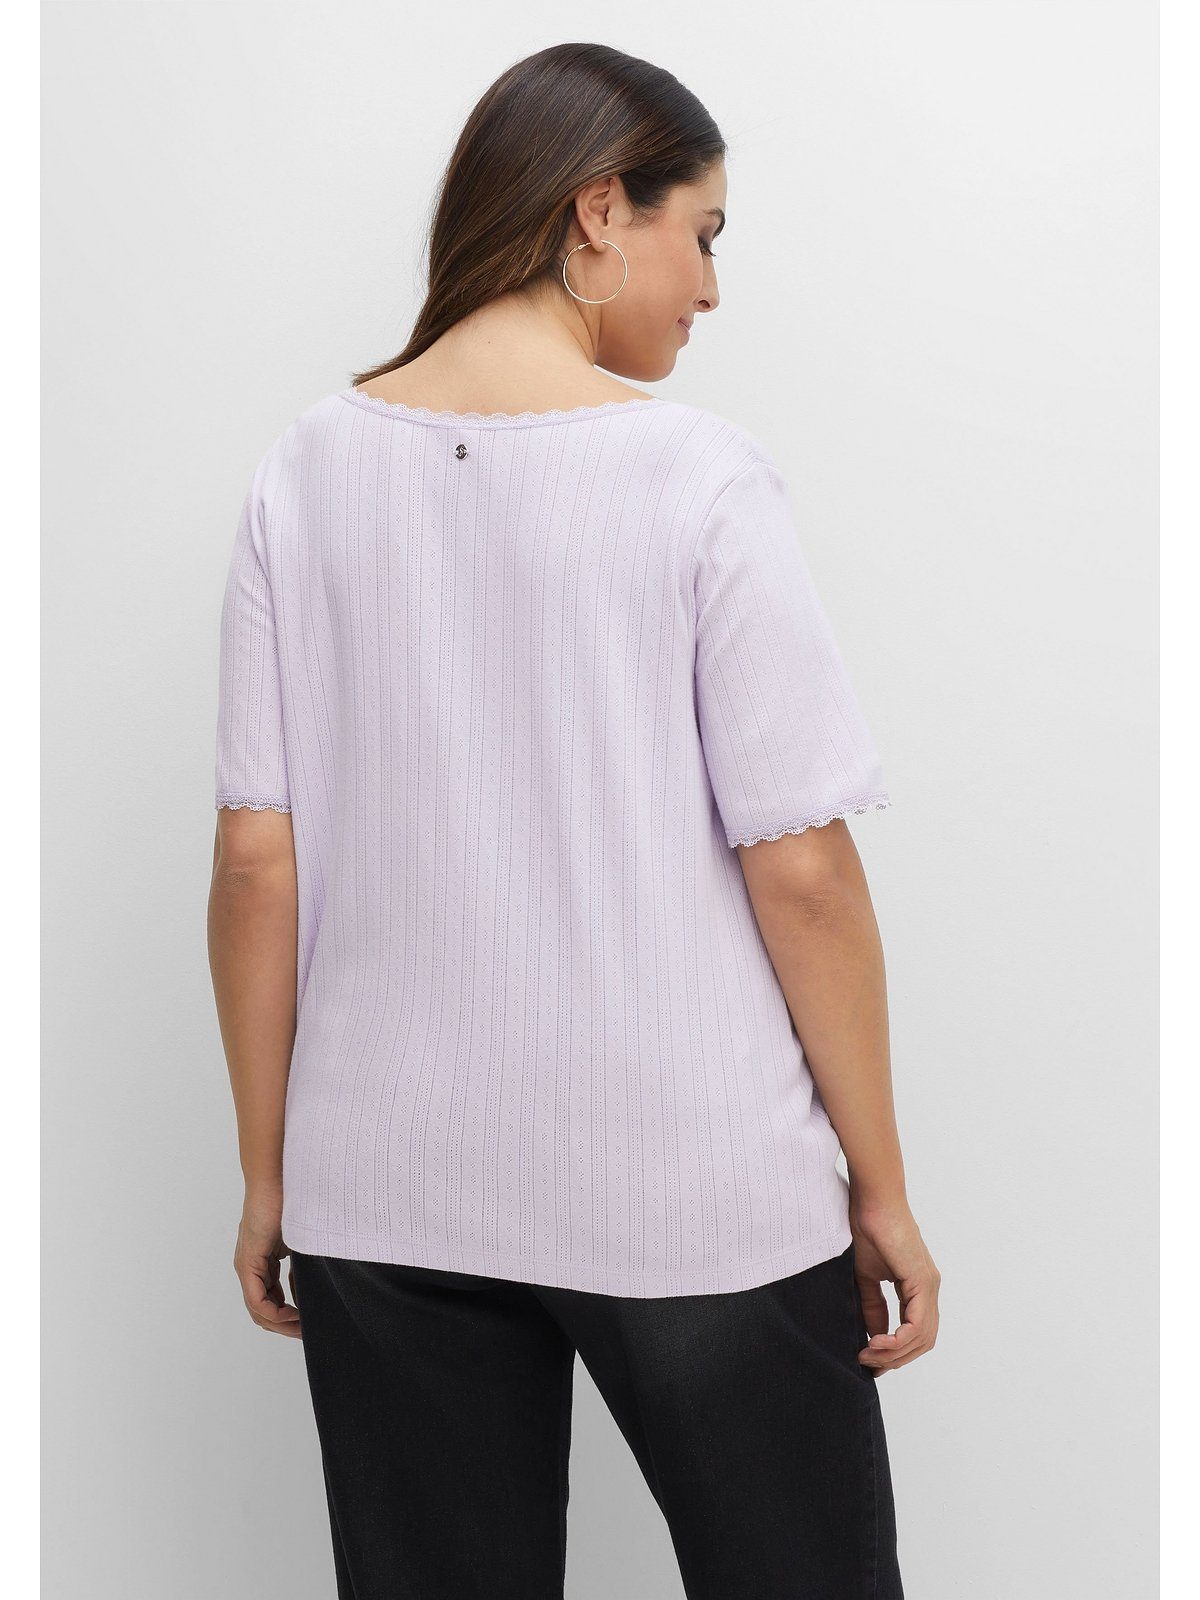 und T-Shirt Lochmuster Größen mit Spitze Große lavendel Sheego